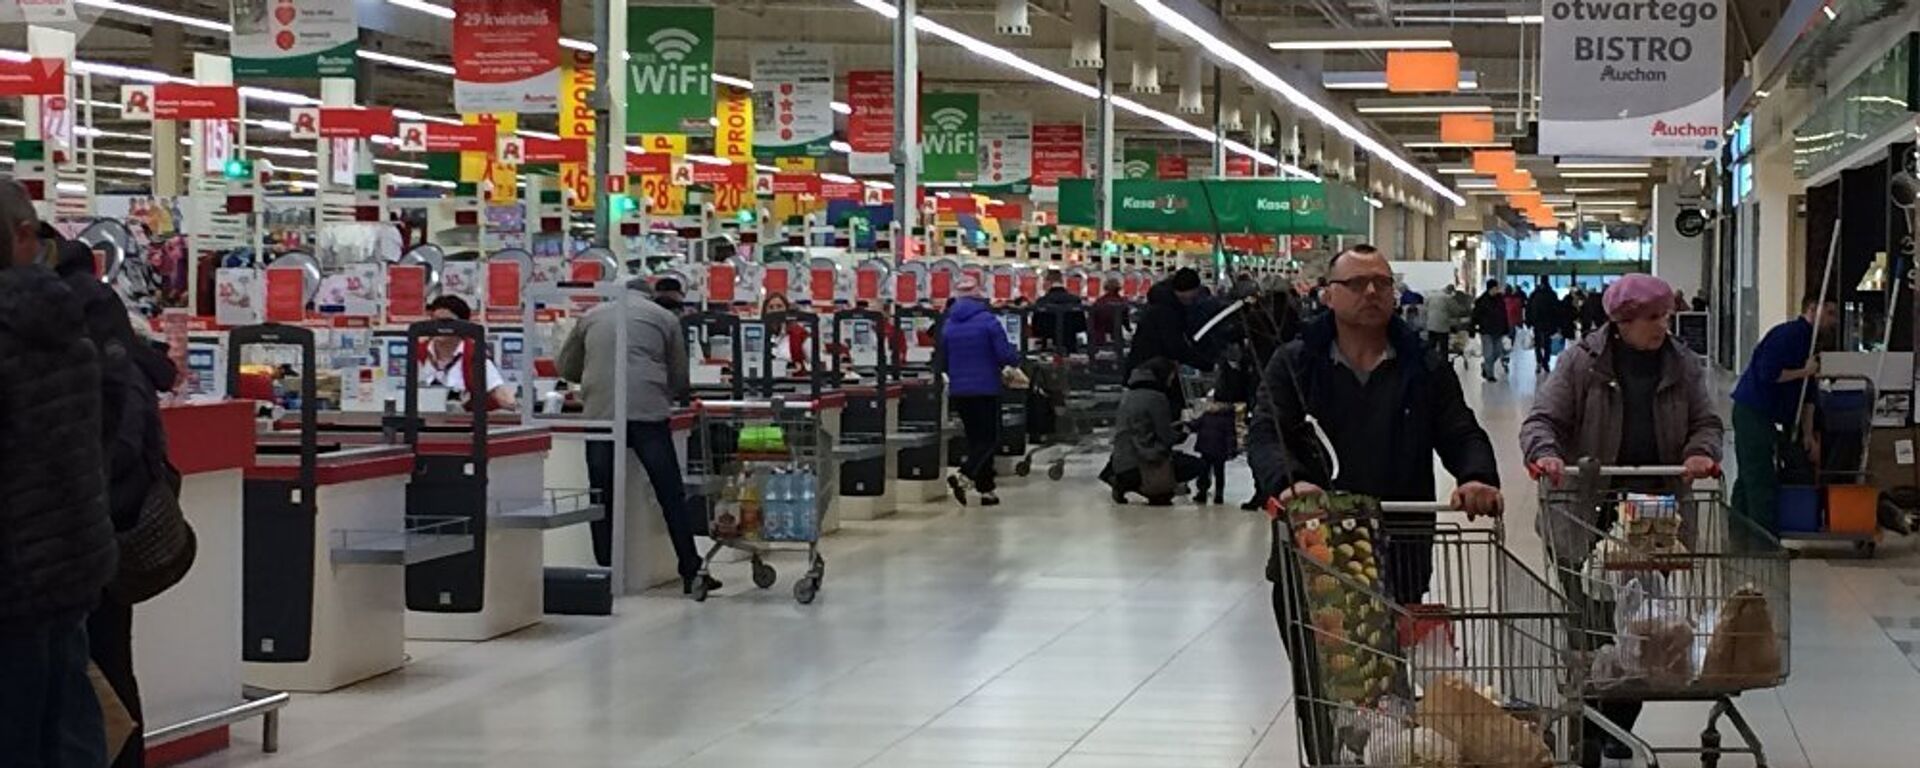 Приезжих из Беларуси покупателей в супермаркетах Польши стало заметно меньше - Sputnik Латвия, 1920, 16.10.2018